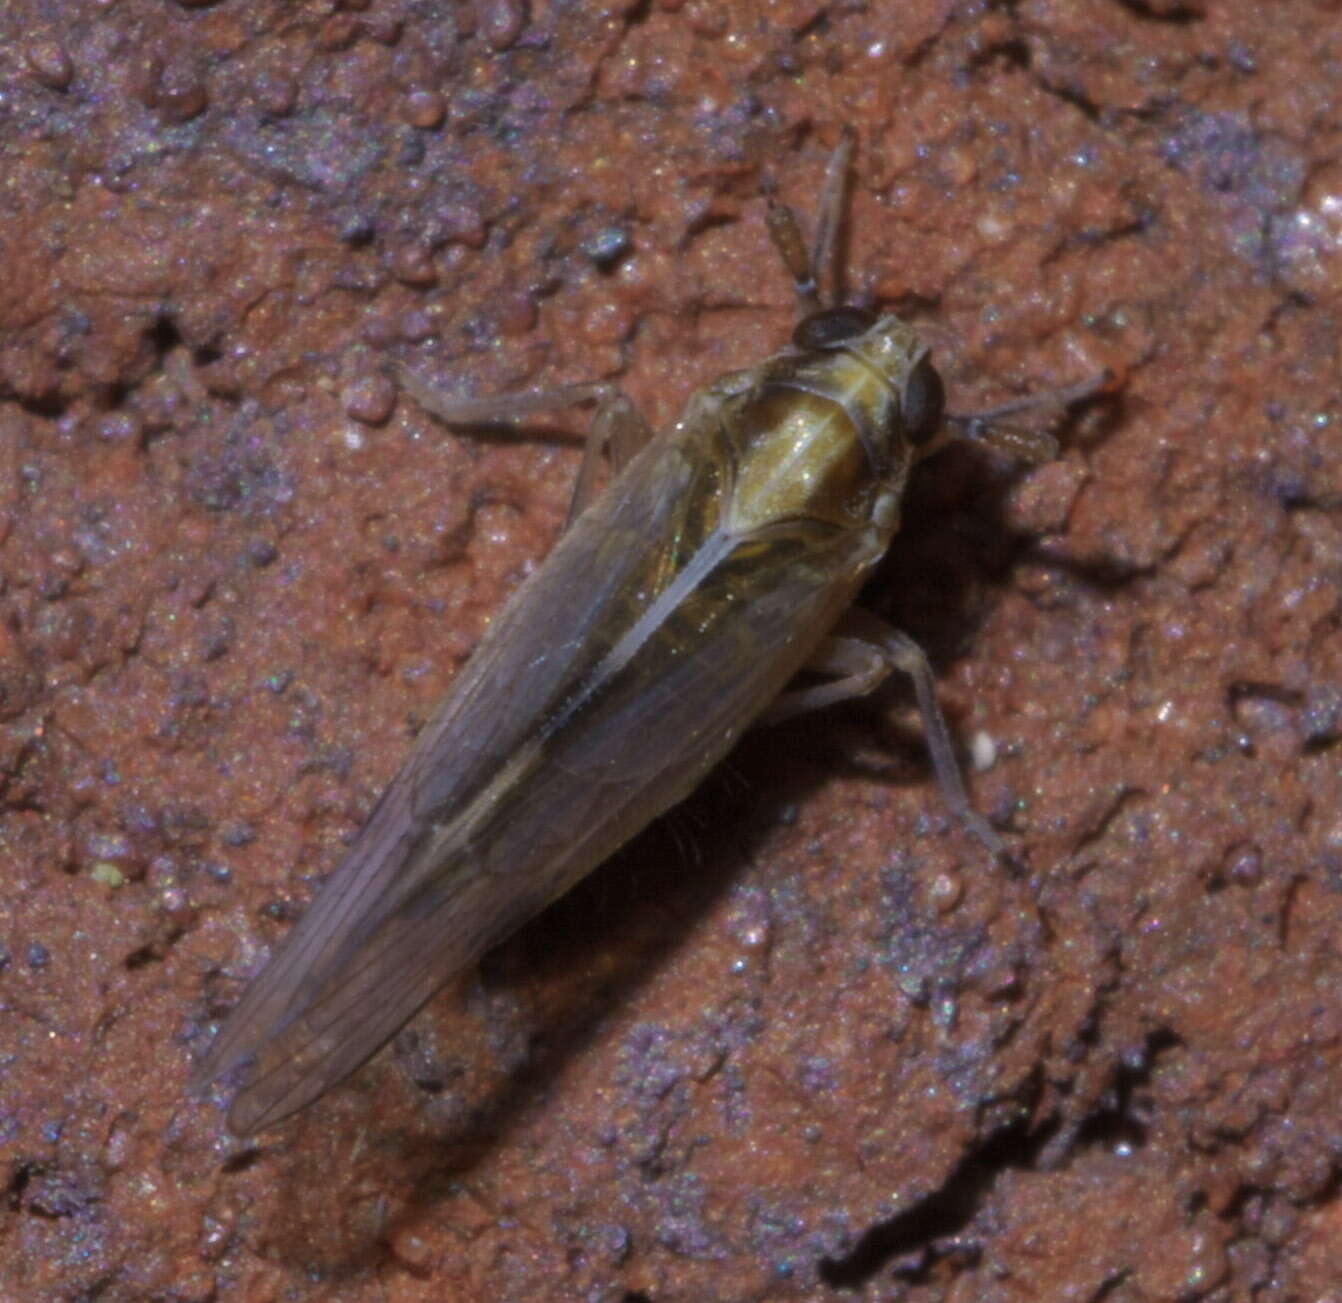 Image of Delphacid planthopper